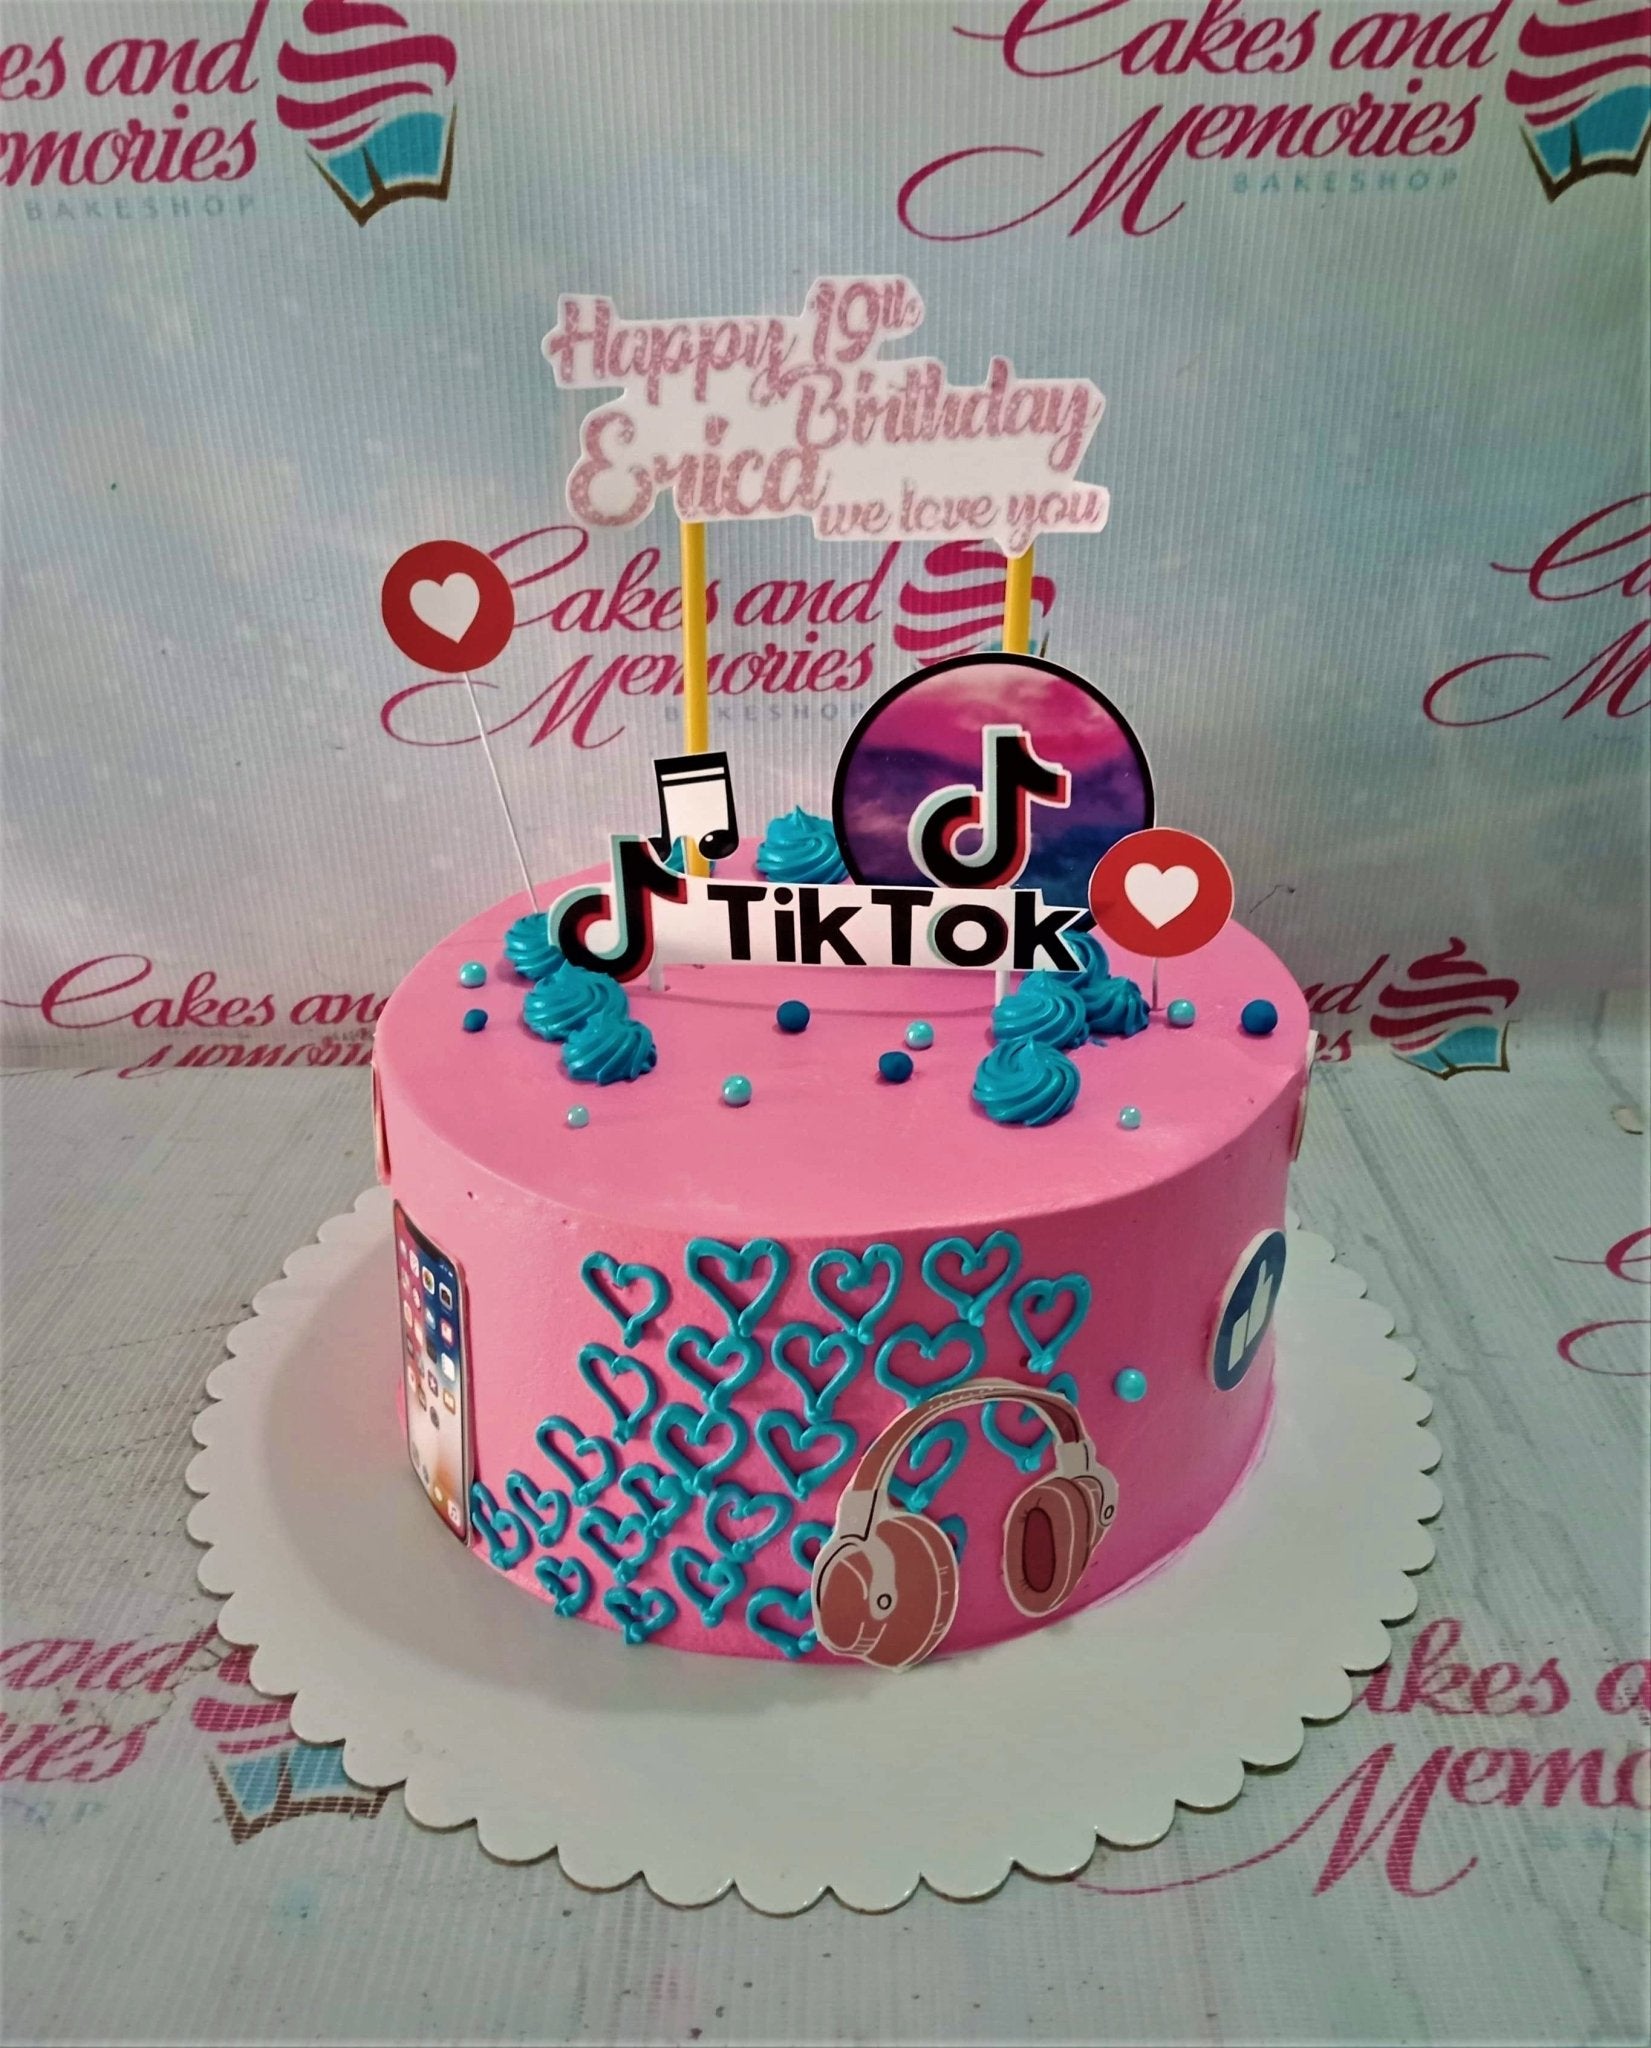 TikTok cake | Cakes on Sea